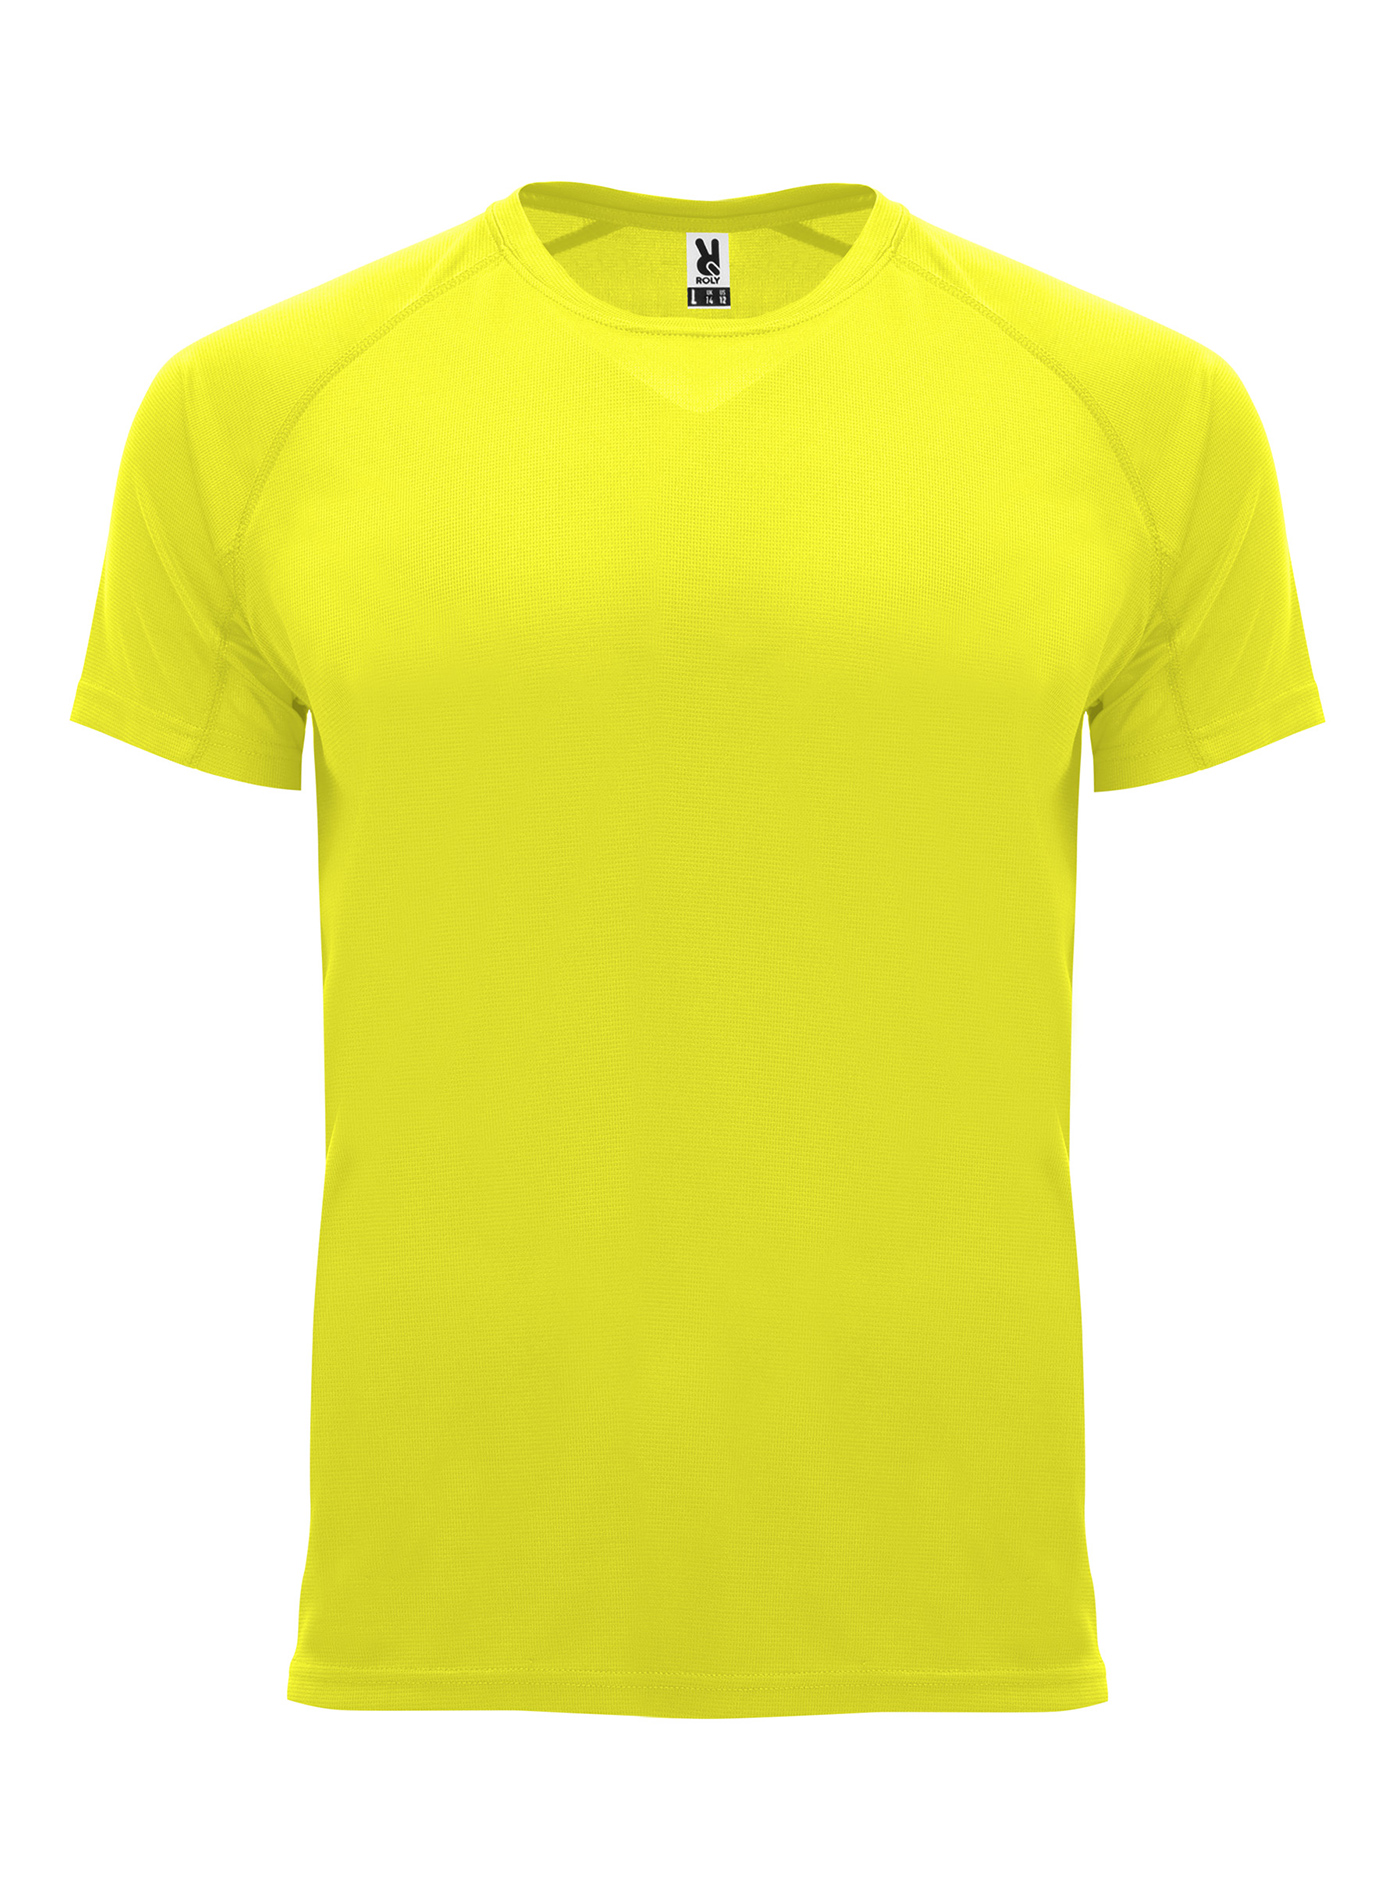 Pánské sportovní tričko Roly Bahrain - Neonově žlutá M